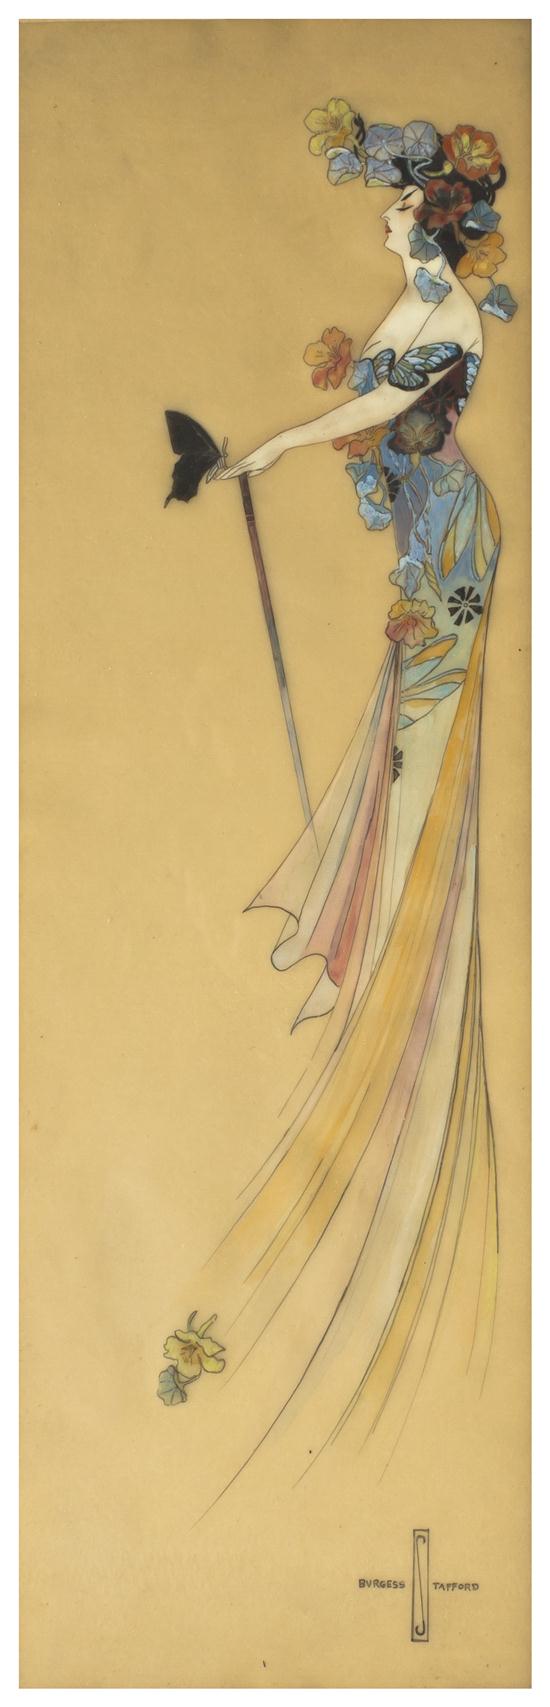 An Art Nouveau Illustration Burgess